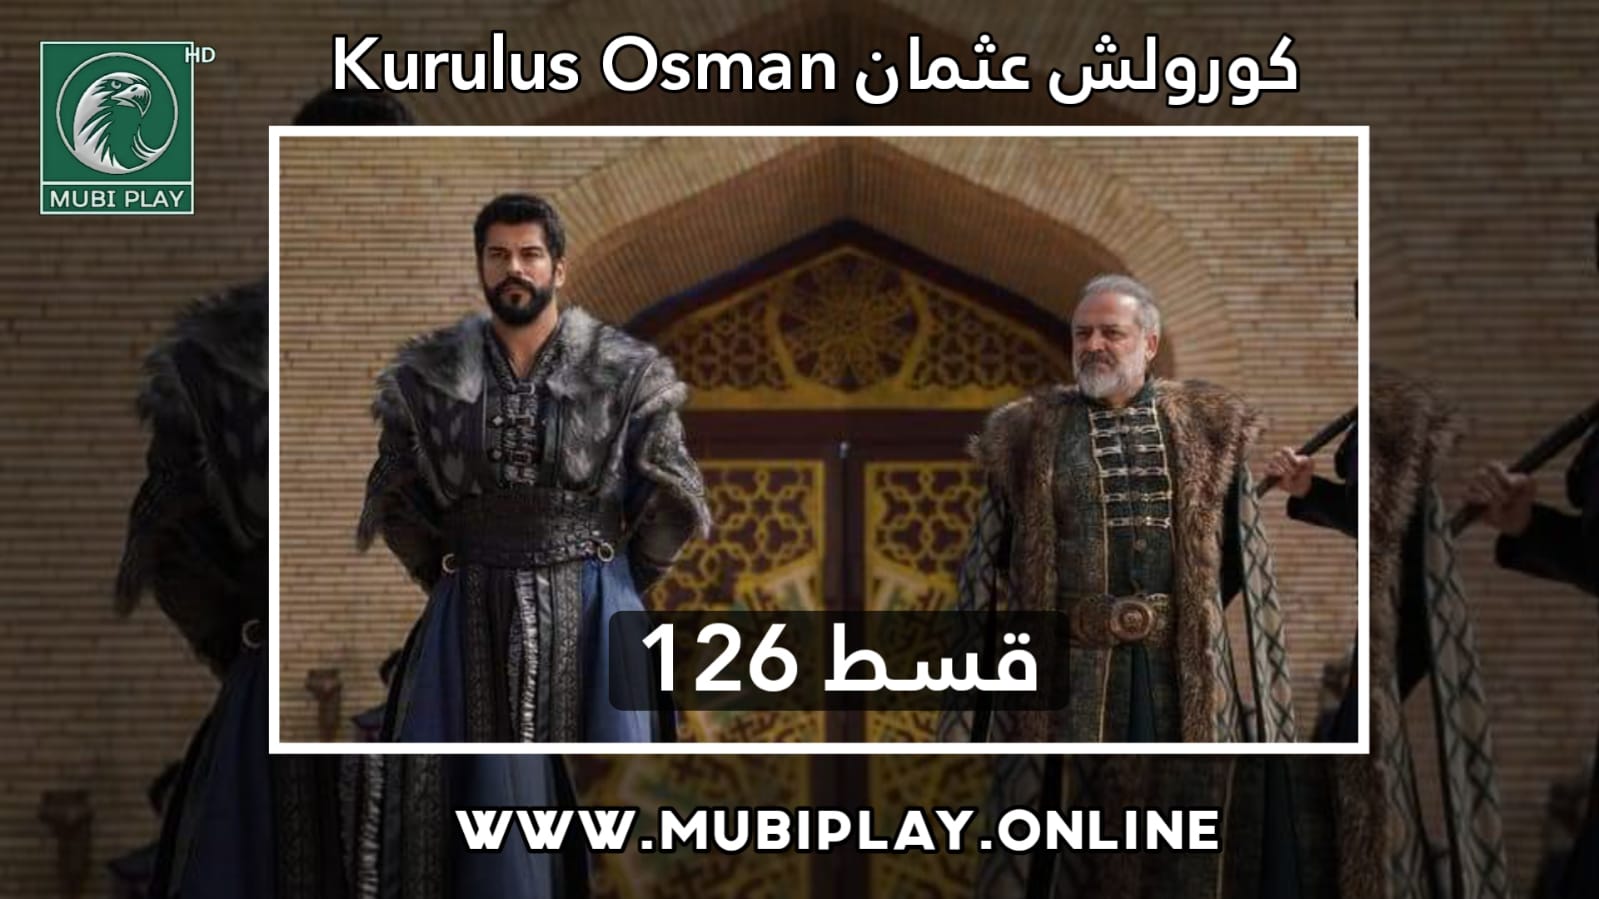 Kurulus Osman Episode 126 Urdu and English Subtitles by MubiPlay